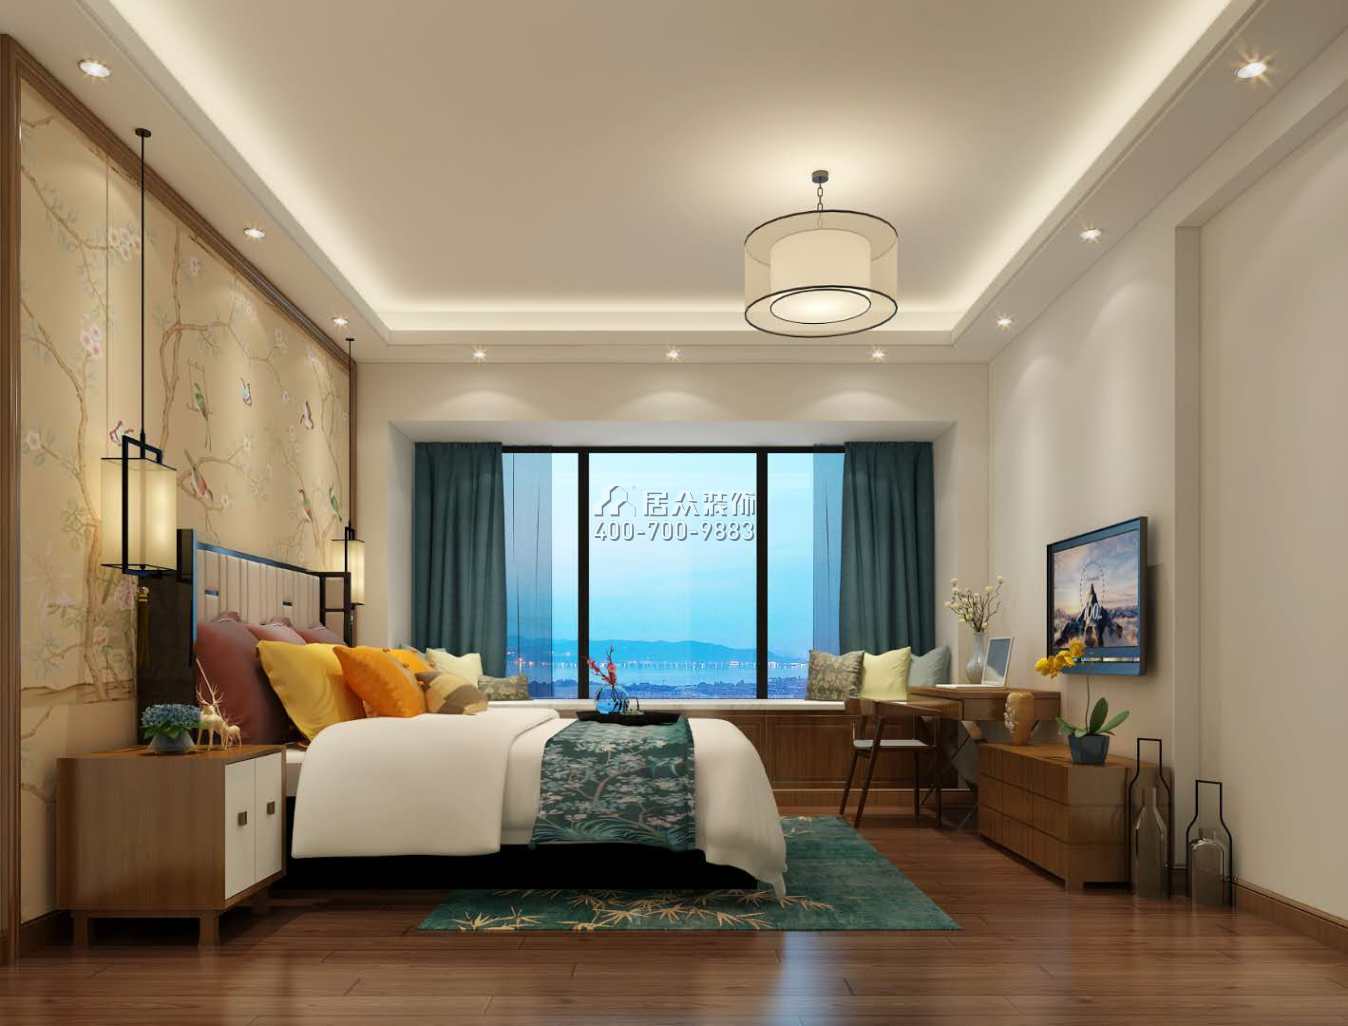 中伦东海岸120平方米中式风格平层户型卧室装修效果图